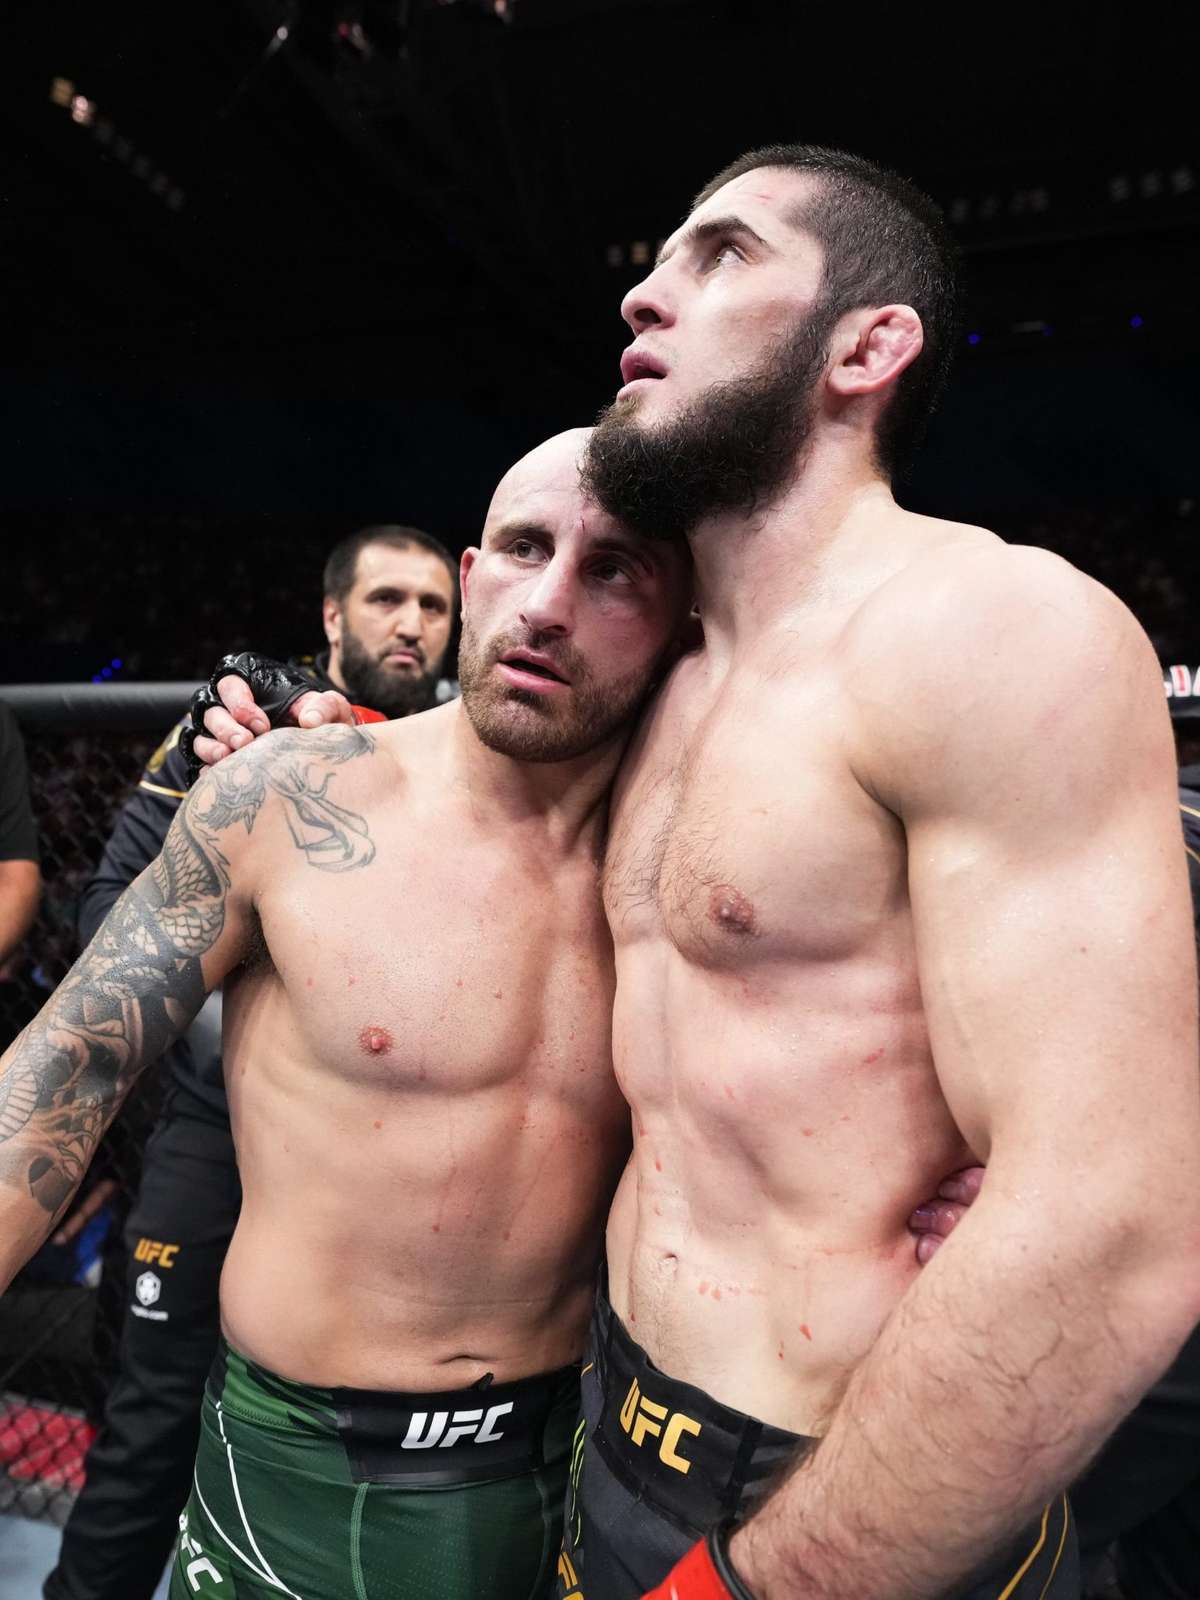 Chimaev revela motivo para lutar com Diaz no UFC: ” Pelo dinheiro